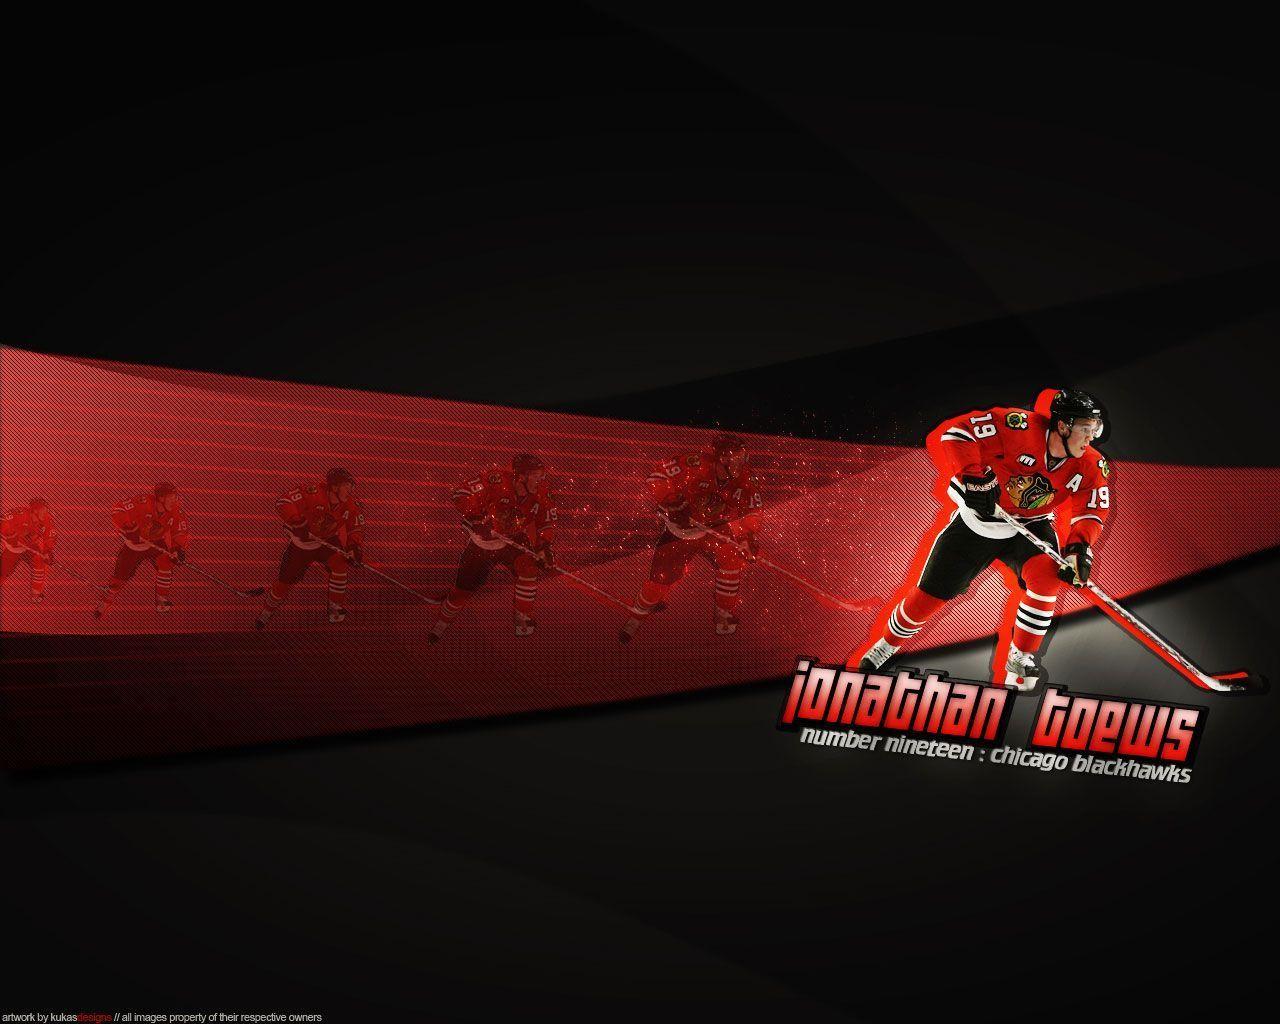 Free Chicago Blackhawks desktop wallpaper. Chicago Blackhawks